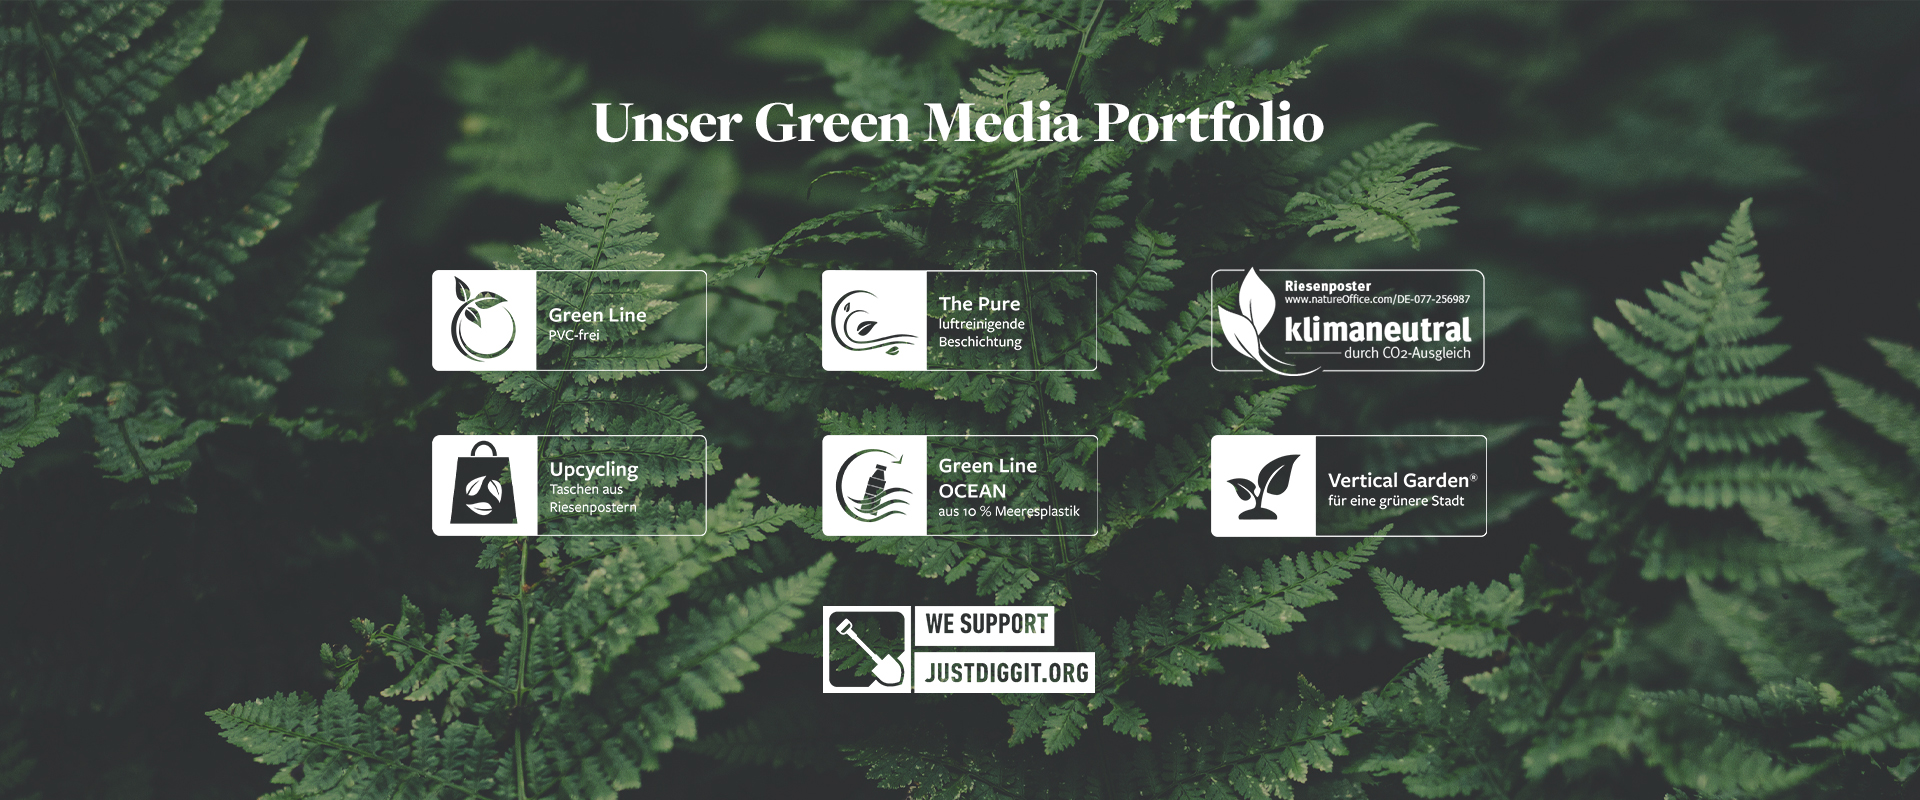 unser-green-media-portfolio_1920x800_v2